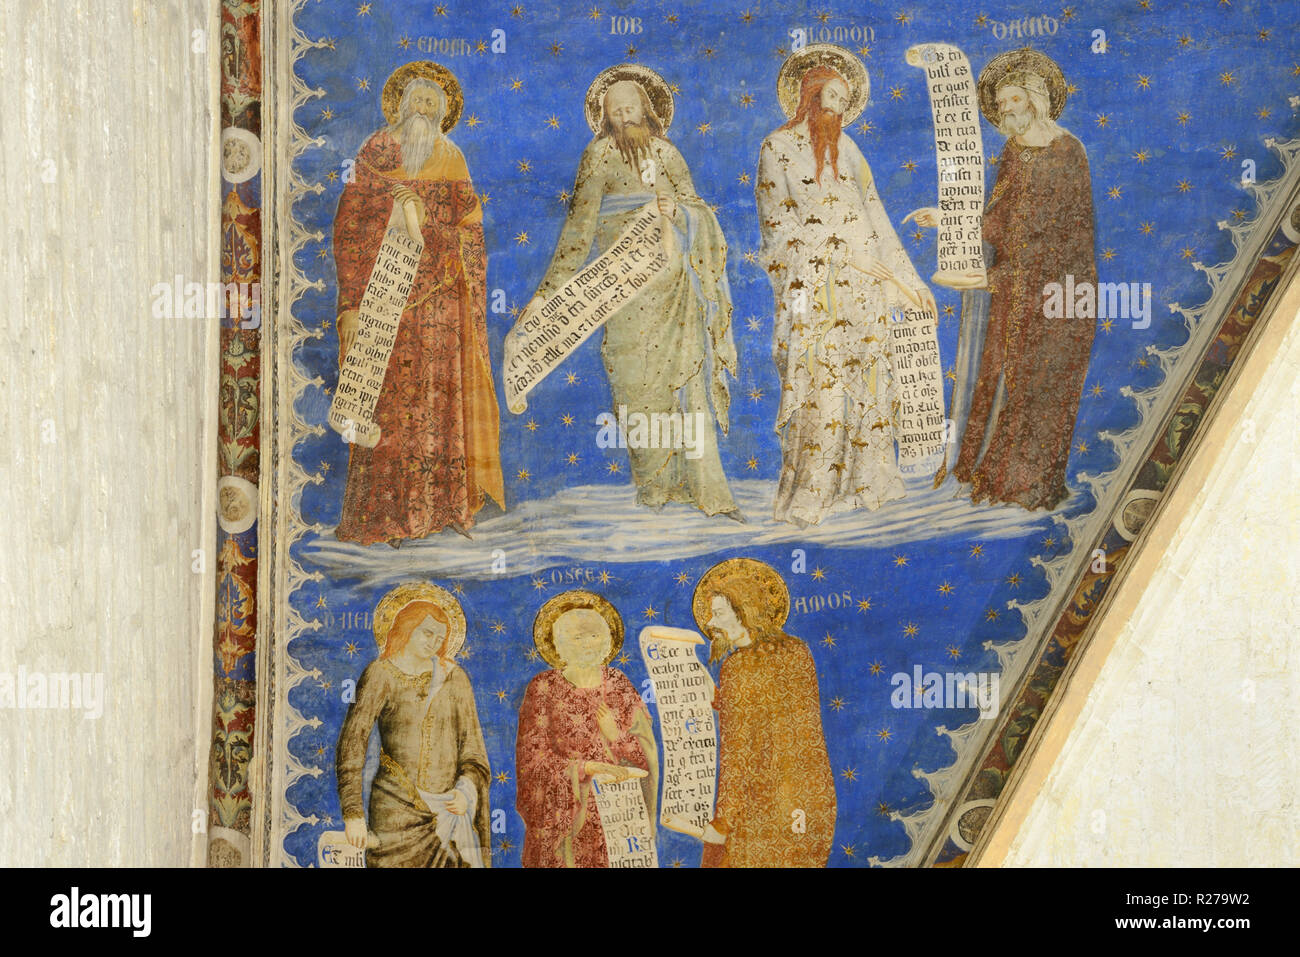 El patriarca Enoc, Job, Solomon & Amos de profetas Fresco, mural o la pintura de la pared (1353), de Matteo Giovannetti Salle de Justicia Palacio de los Papas de Avignon Foto de stock